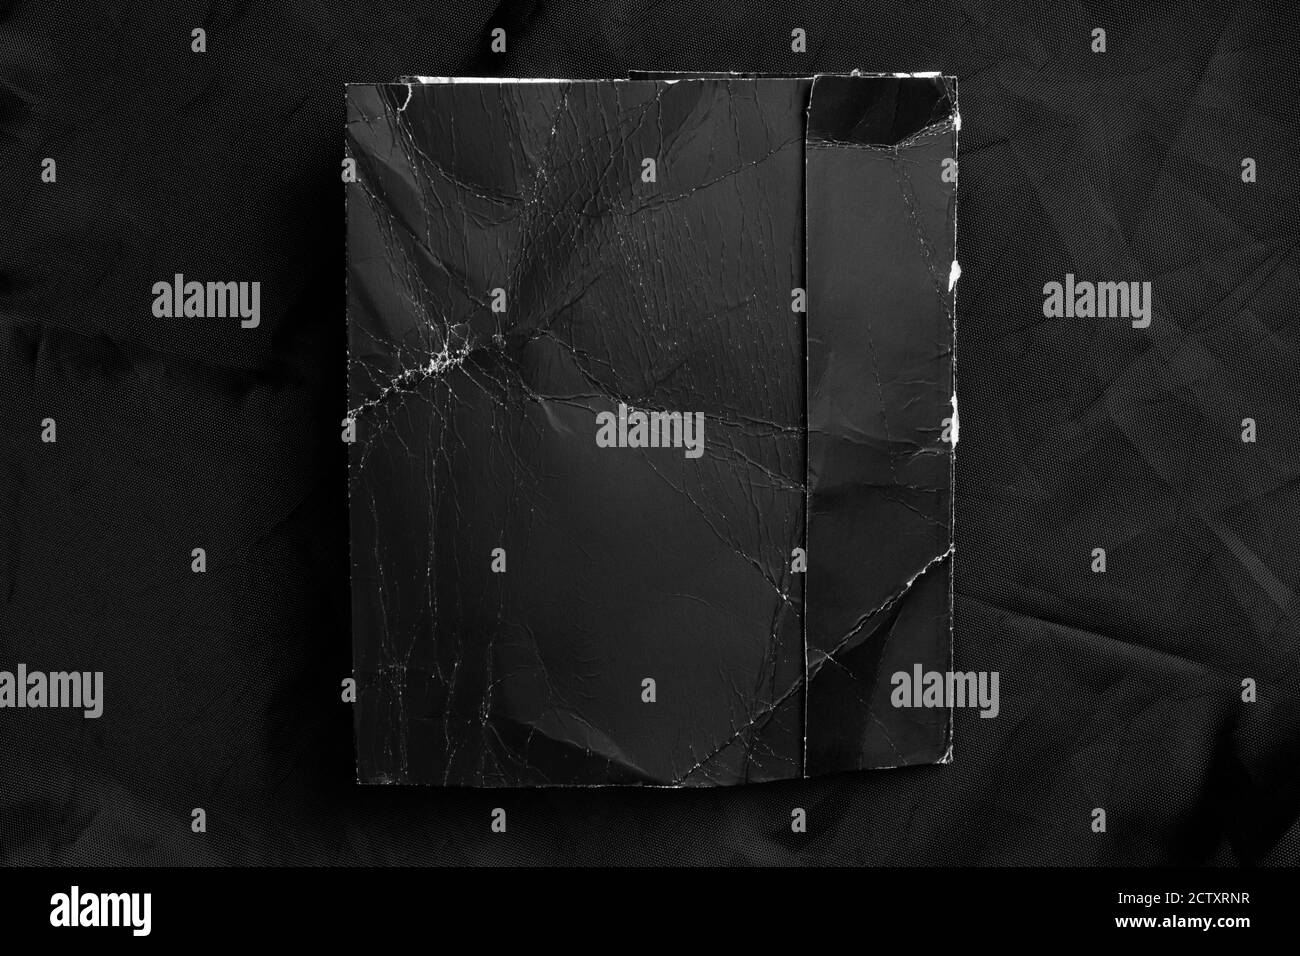 Schwarzes zerknittertes Papier mit ausgefransten Falten auf schwarzem zerknittertem Kunstmaterial. Nahaufnahme. Grunge-Modell. Speicherplatz kopieren. Stockfoto